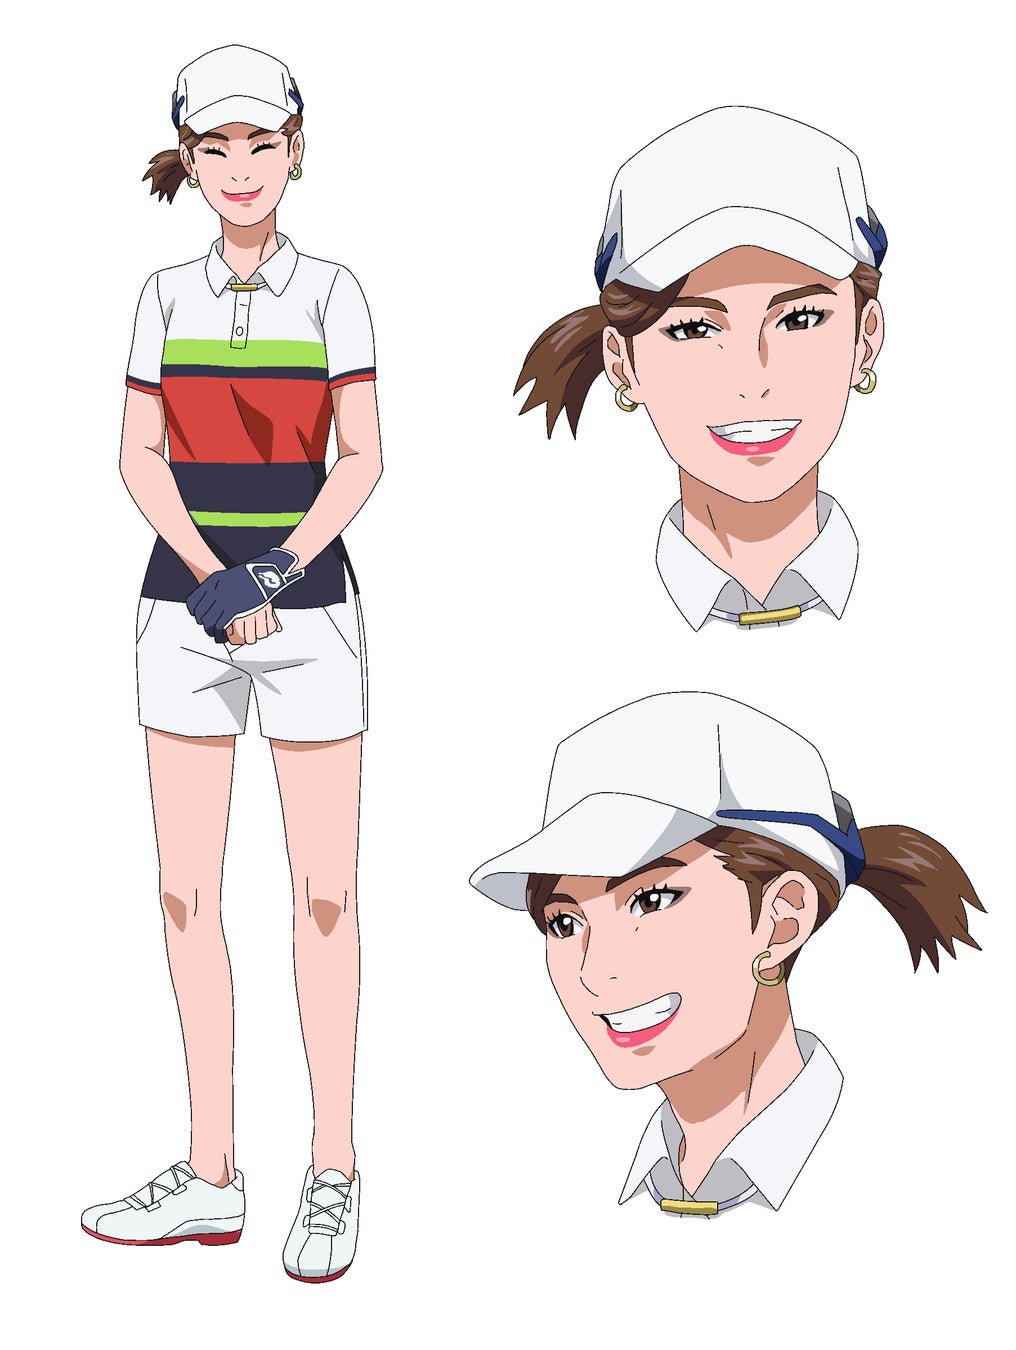 絶賛放送中のゴルフアニメ『BIRDIE WING -Golf Girls’ Story-』にプロゴルファーの大里桃子プロ、関藤直熙プロが参戦決定！